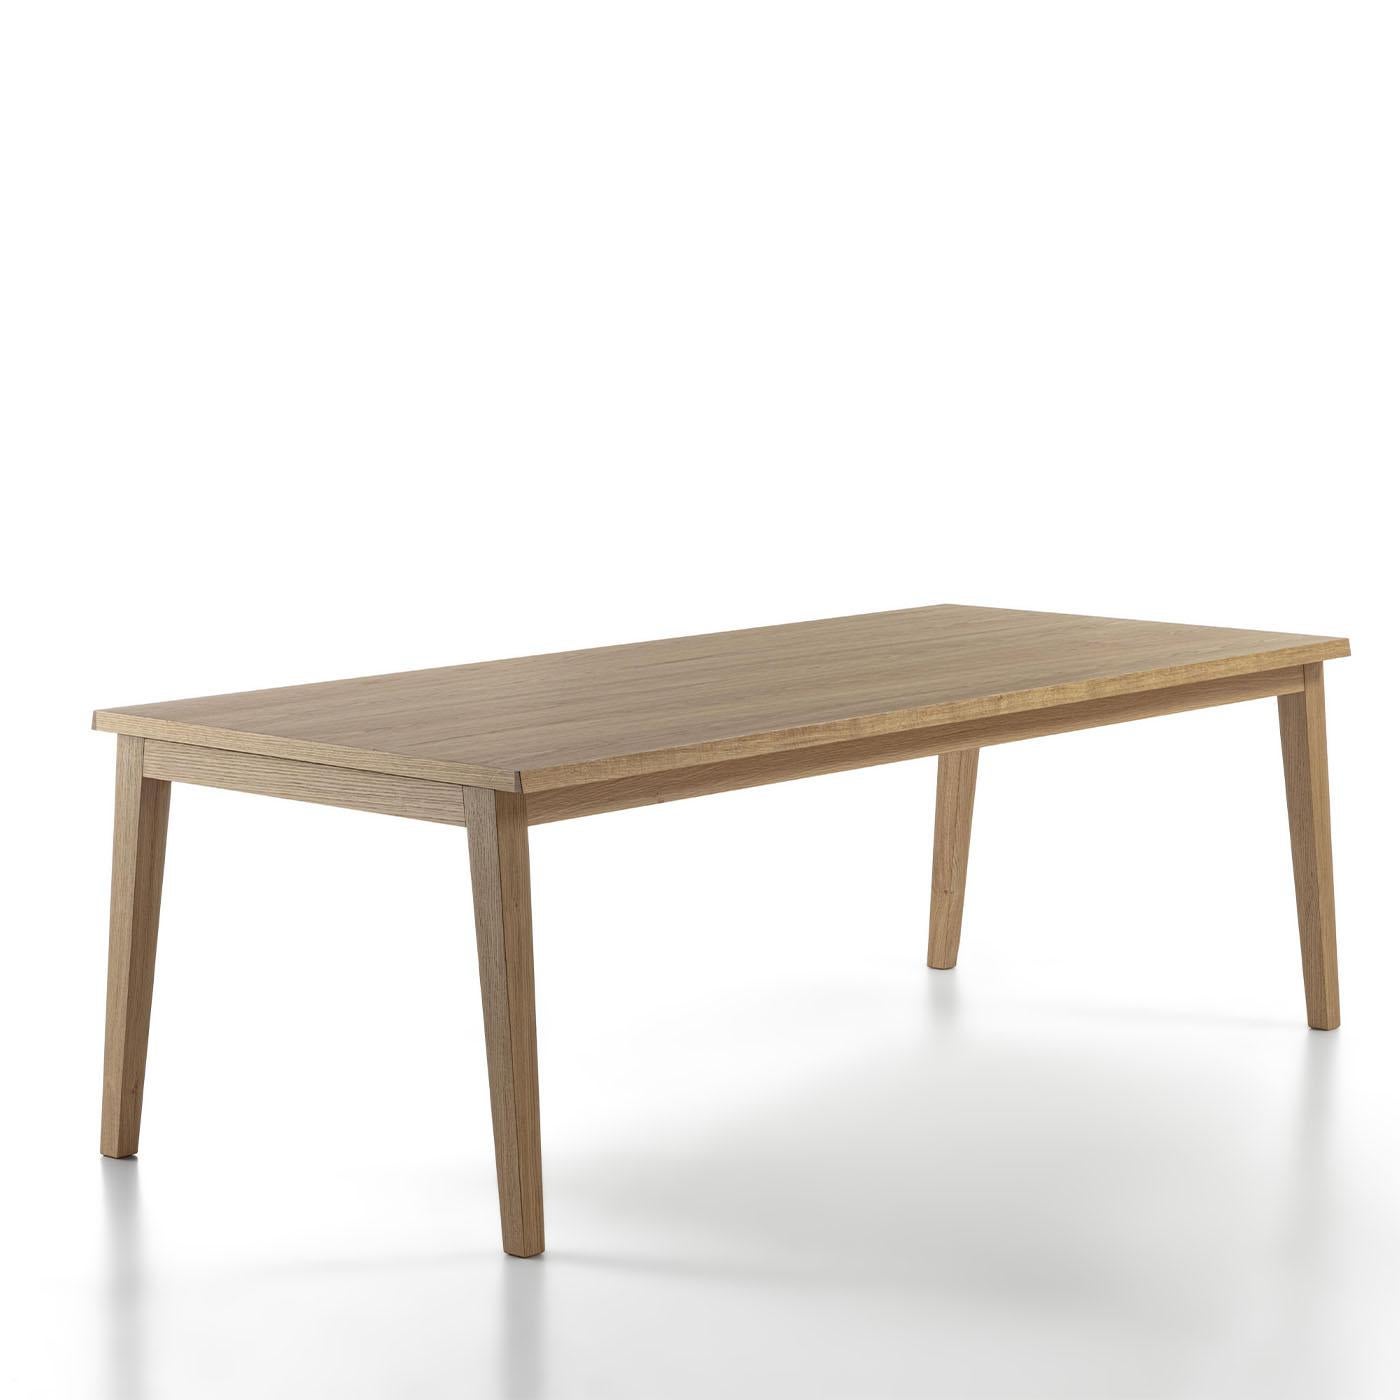 Cette table de salle à manger en chêne est l'incarnation du minimalisme pur. Elle constitue la solution idéale pour réunir famille et amis autour d'un repas tout en les surprenant par l'unicité de son grain. Un système permettant l'extension peut